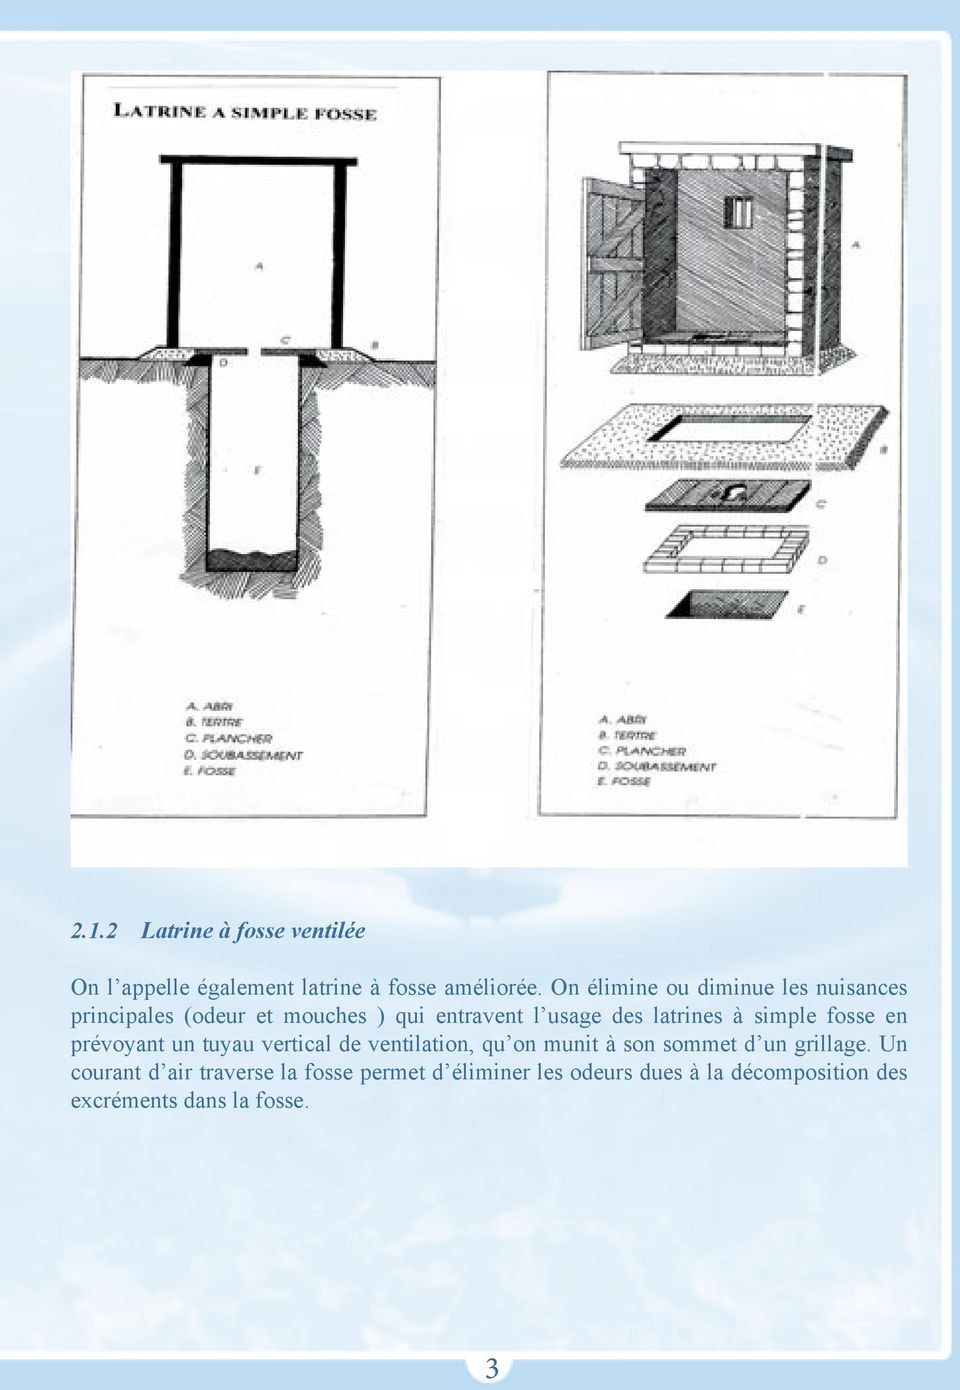 latrines à simple fosse en prévoyant un tuyau vertical de ventilation, qu on munit à son sommet d un